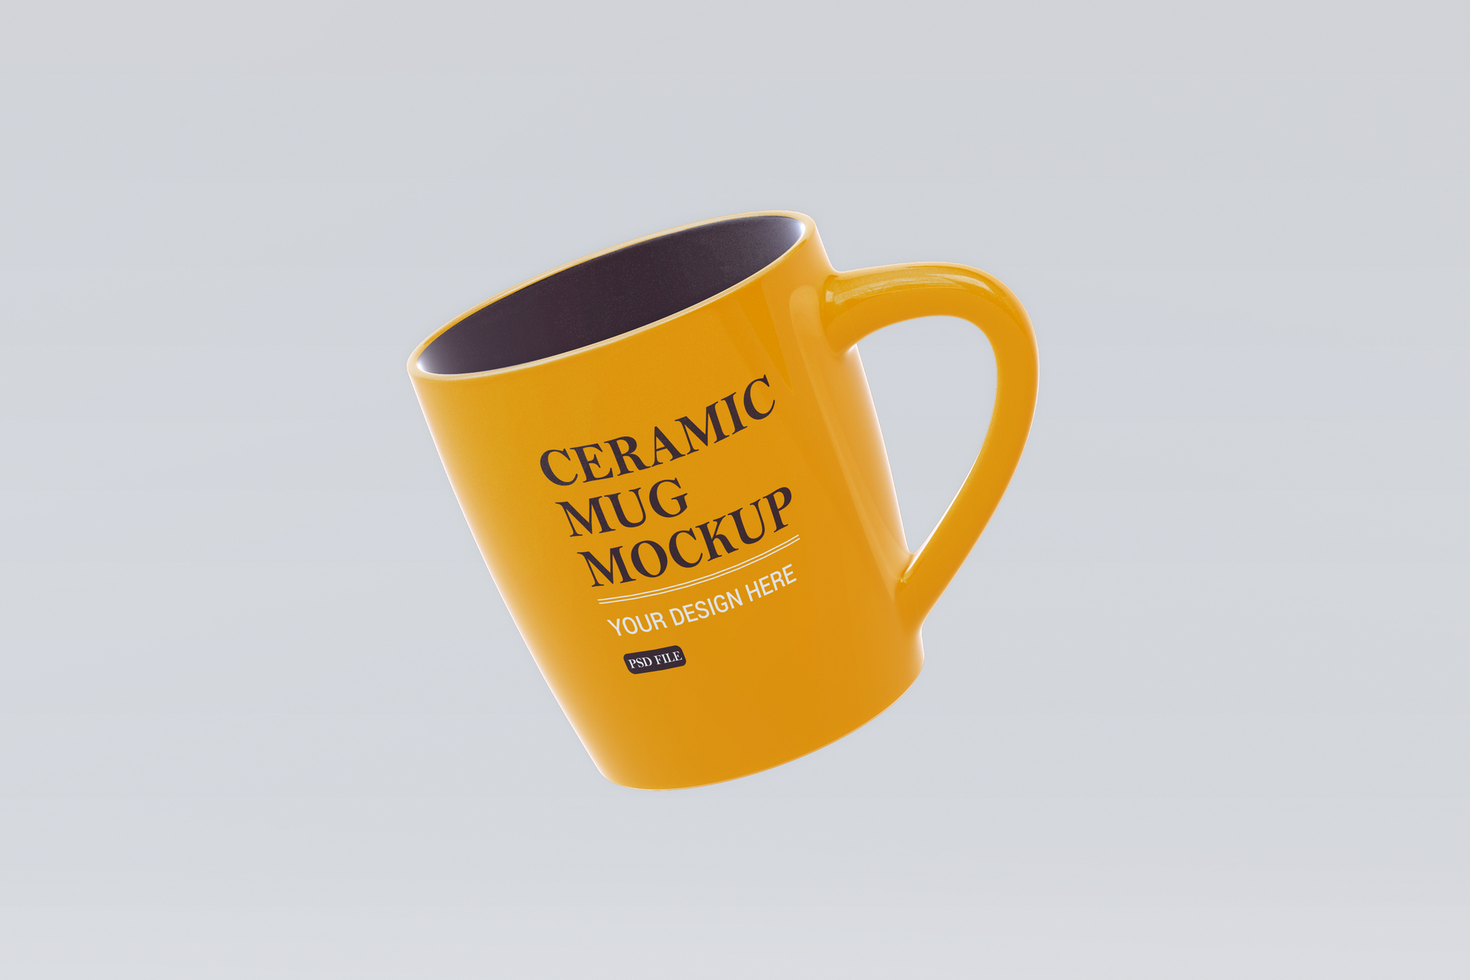 Ceramic mug mockup design template psd